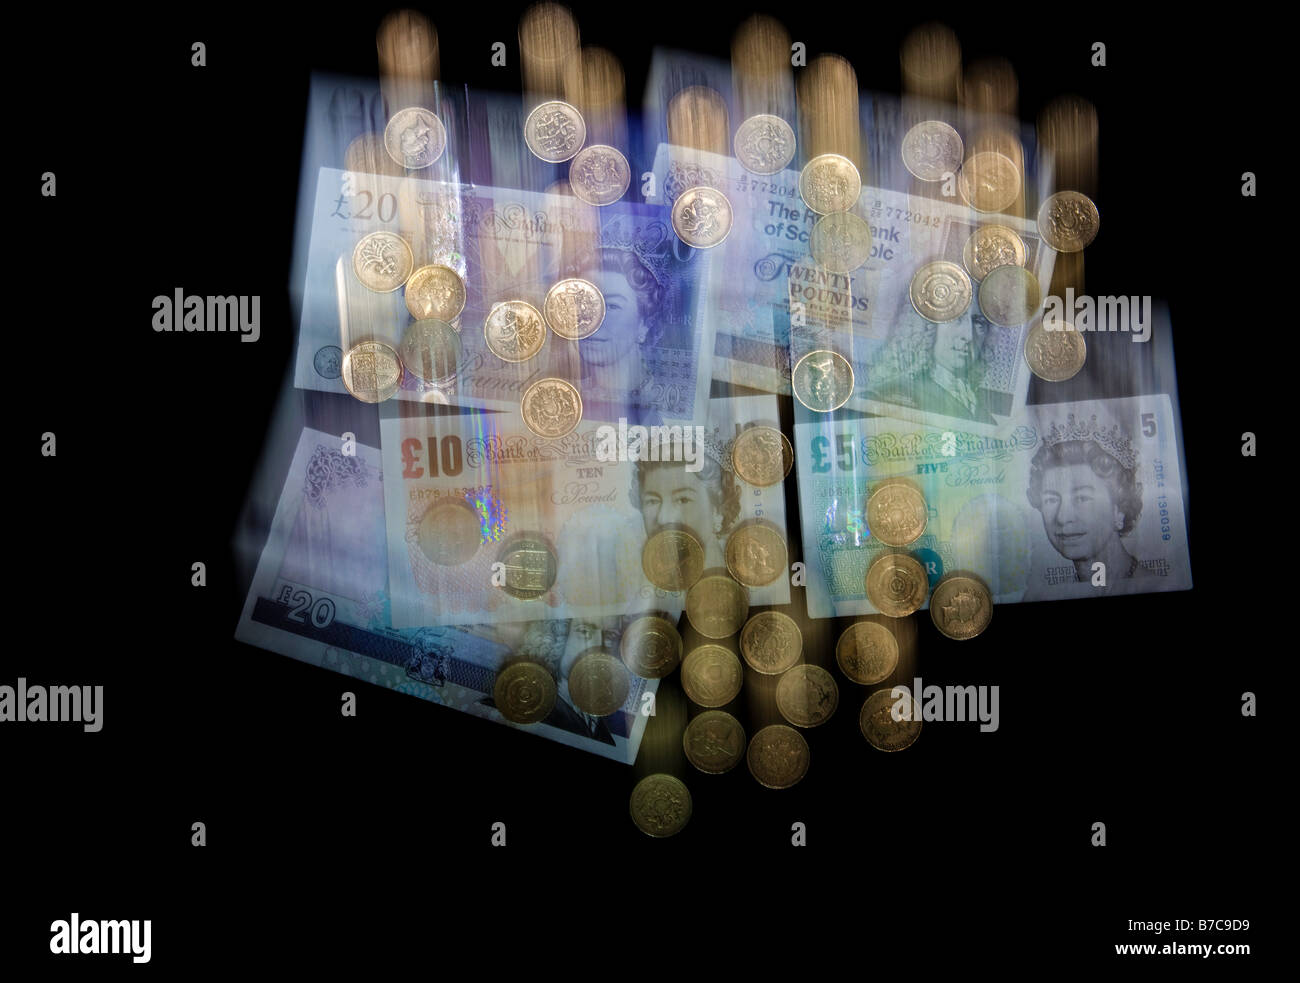 La baisse de l'argent monnaie britannique floue, les billets et pièces livre sterling pour illustrer la chute de livre Banque D'Images